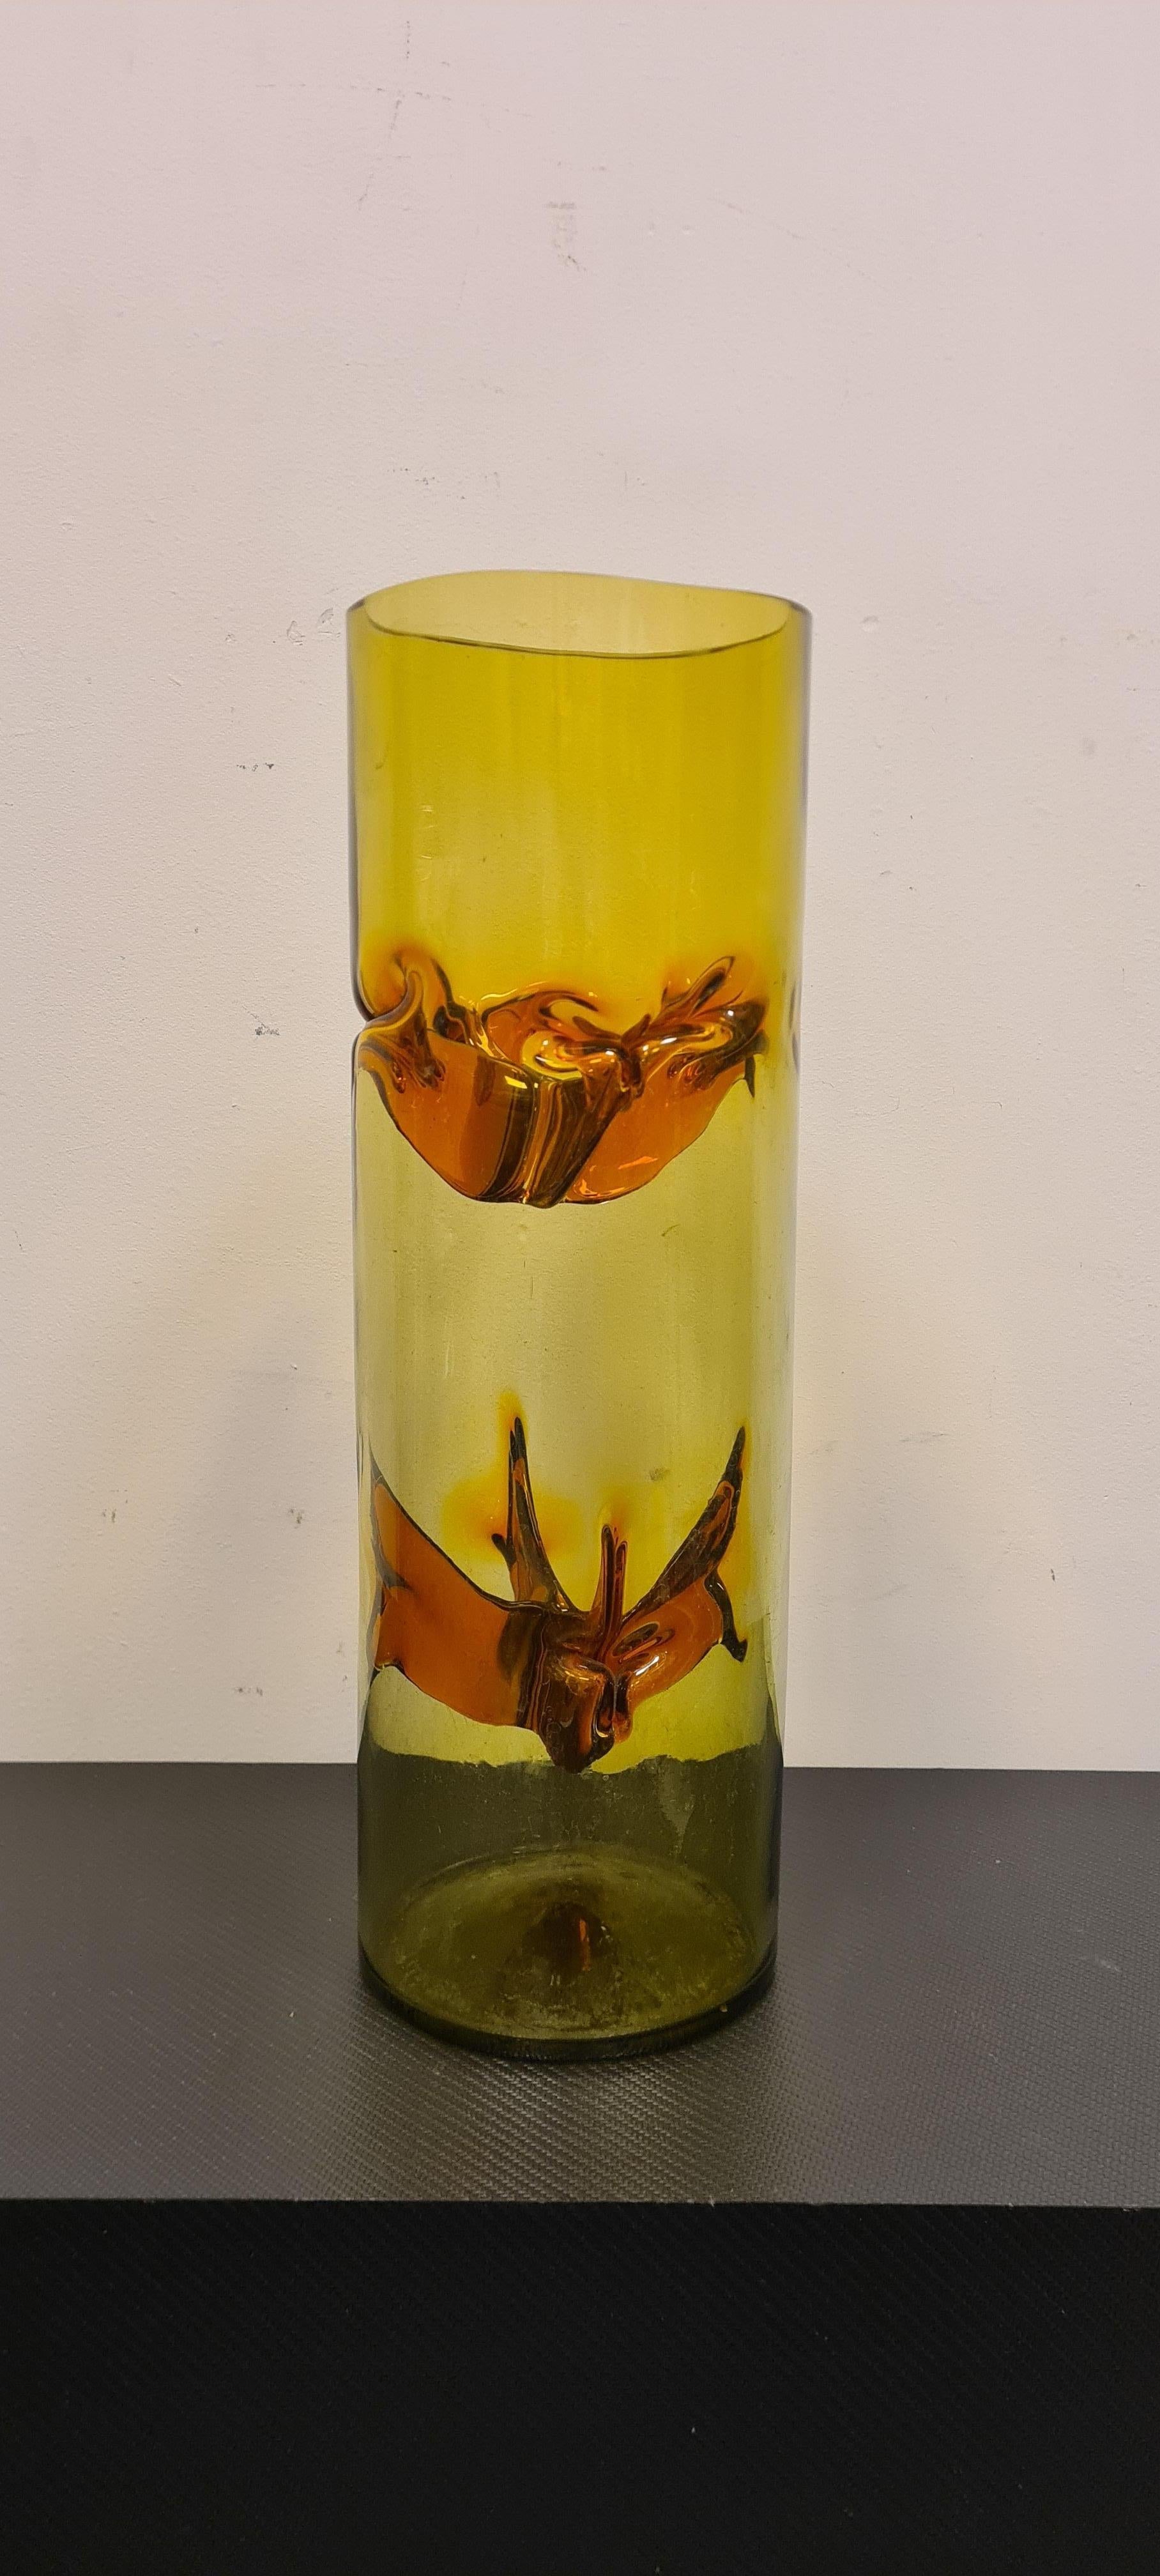 Vase Talea aus der Serie Membrane von Toni Zuccheri für VeArt.

Elegante zylindrische Vase aus geblasenem Muranoglas mit polychromen Applikationen.

Der zylindrische Teil hat einen gelben Farbton, der durch die bernsteinfarbenen Innenapplikationen